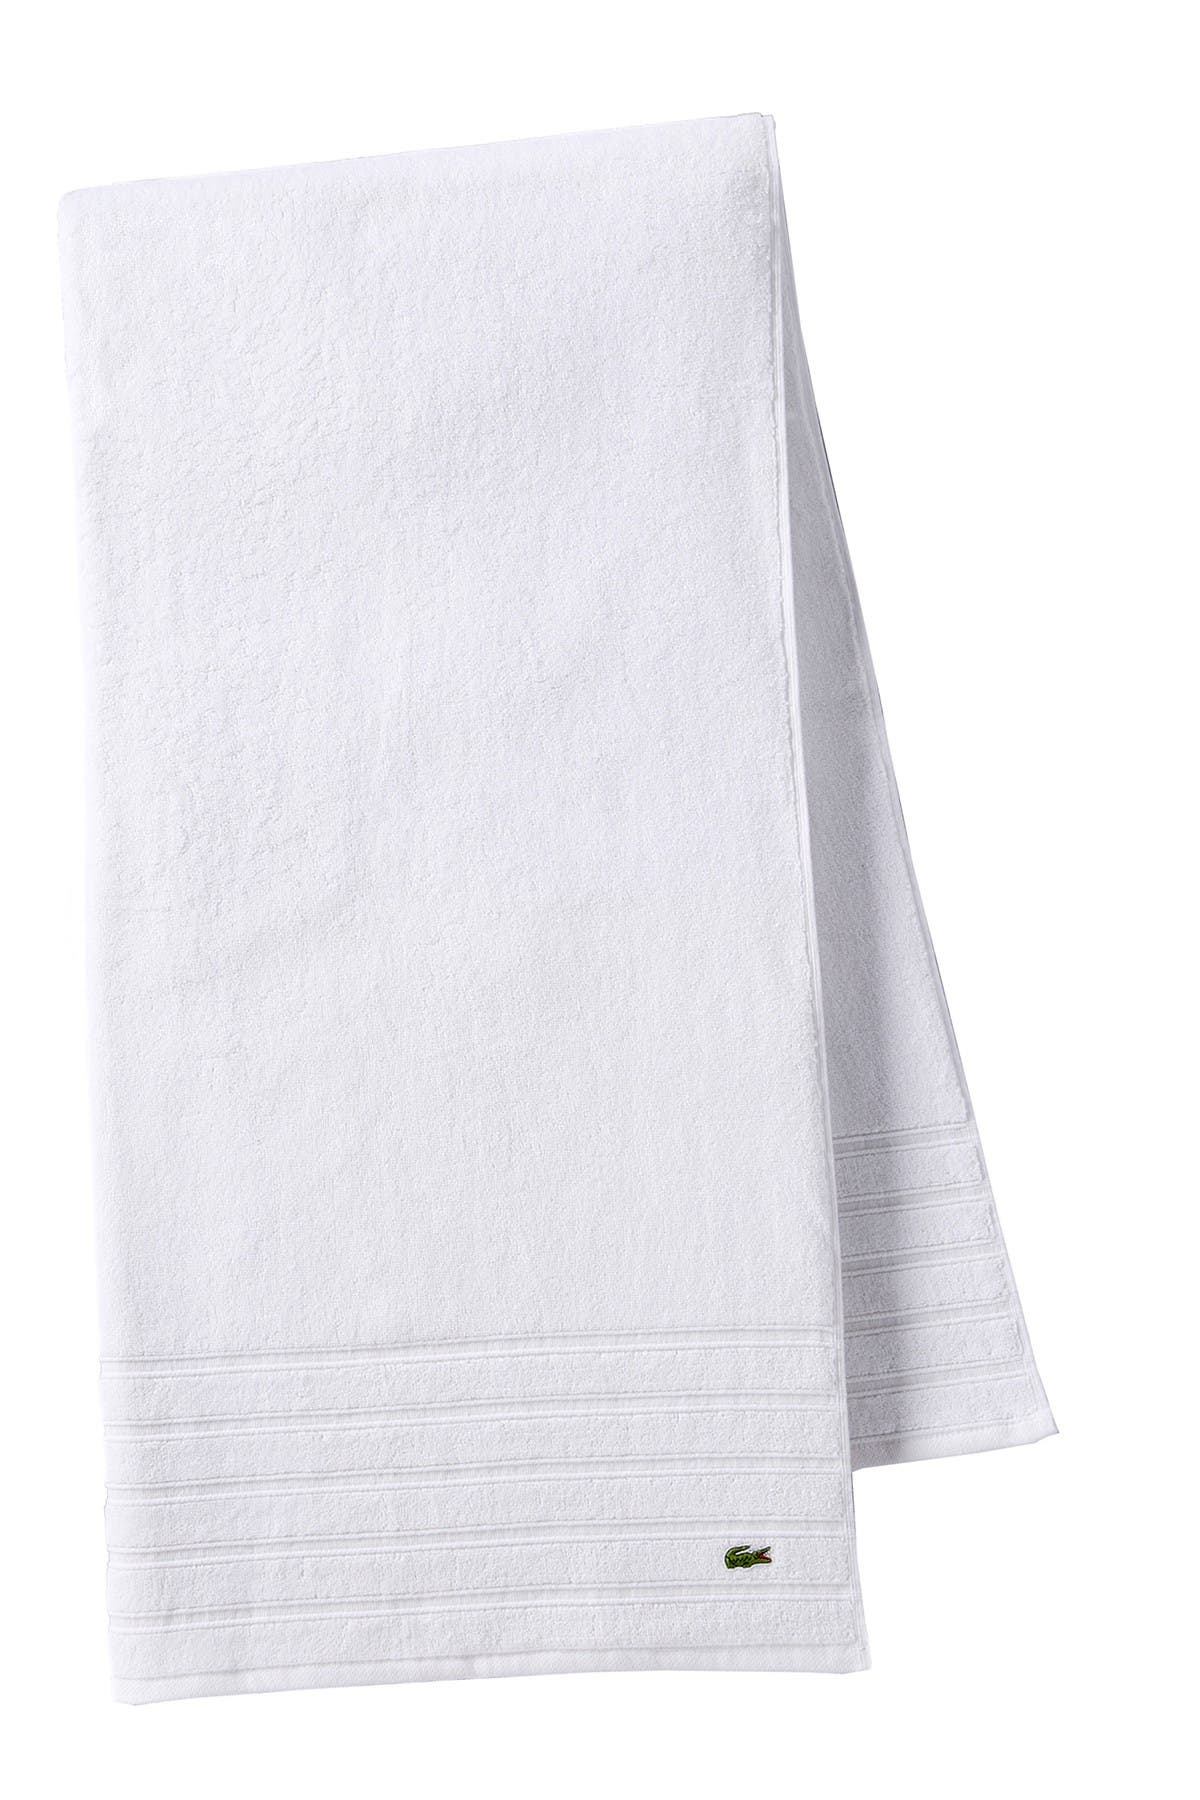 lacoste towels tj maxx